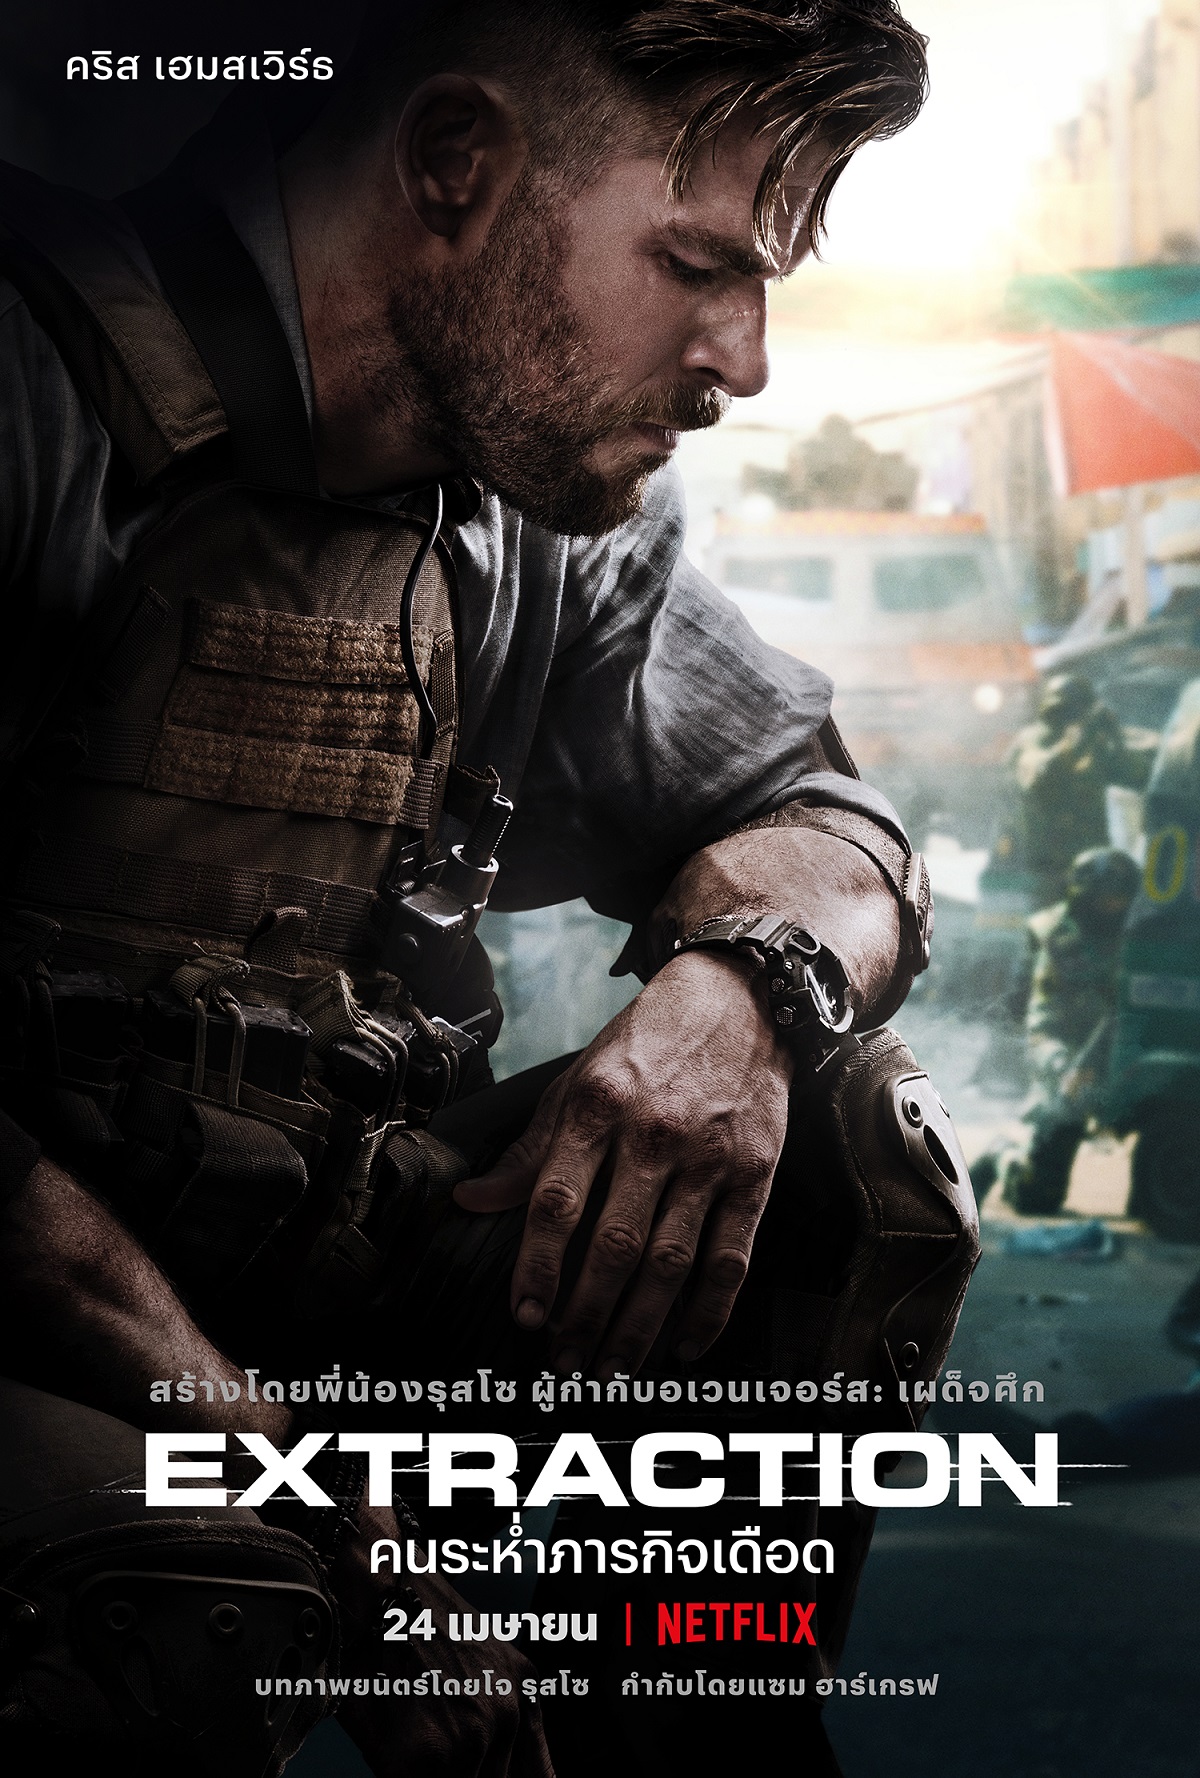 เมื่อ Netflix ชวนไปสนทนากับ “คริส เฮมส์เวิร์ธ” ตัวเป็นๆ ว่าด้วยเรื่องอภิมหาความระห่ำใน “Extraction”